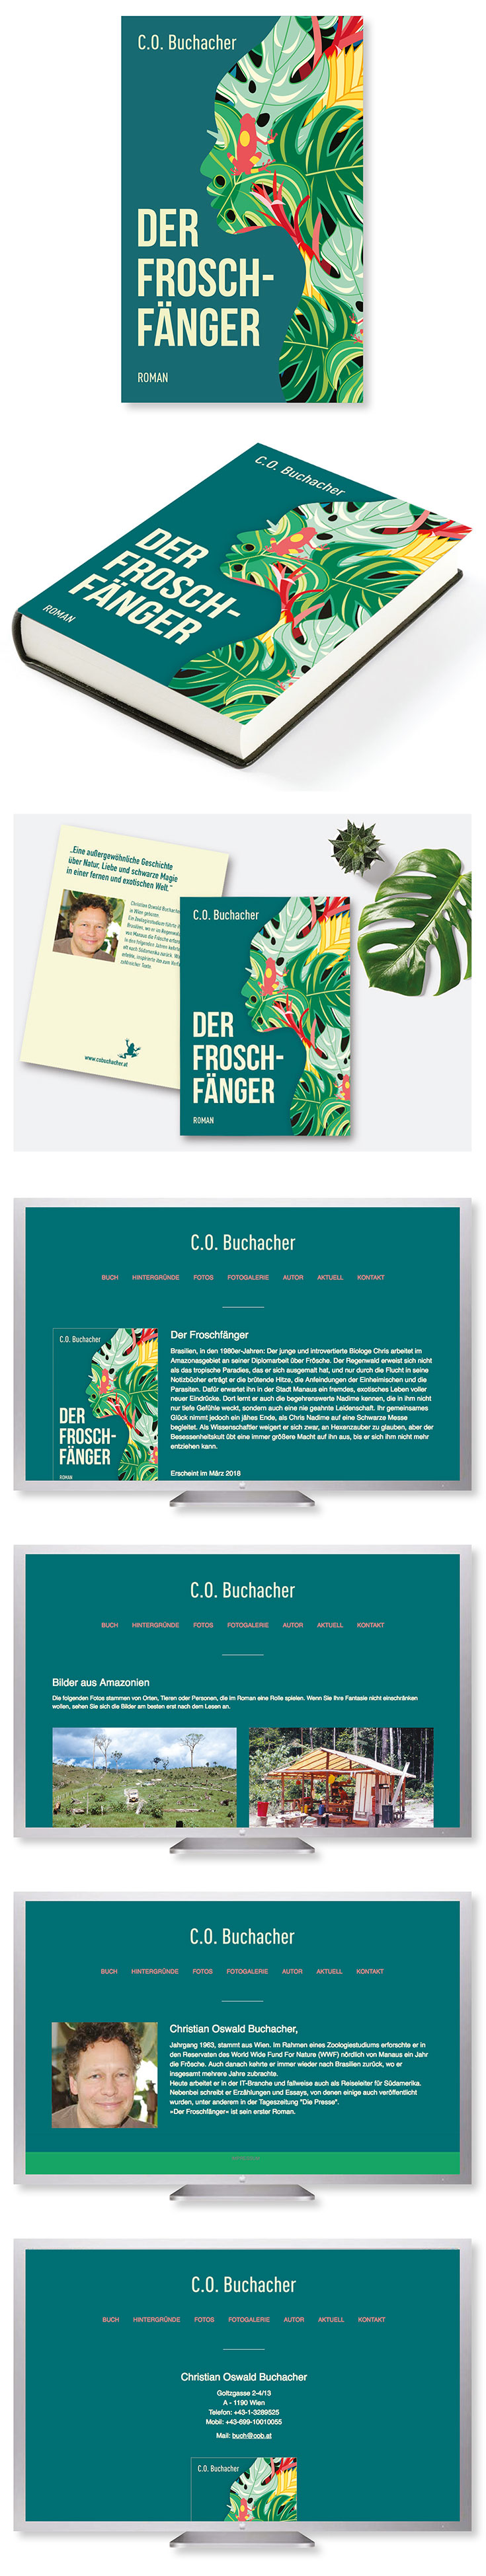 Agnes Schubert Grafik Design Der Froschfänger Buch Cover Postkarte Website